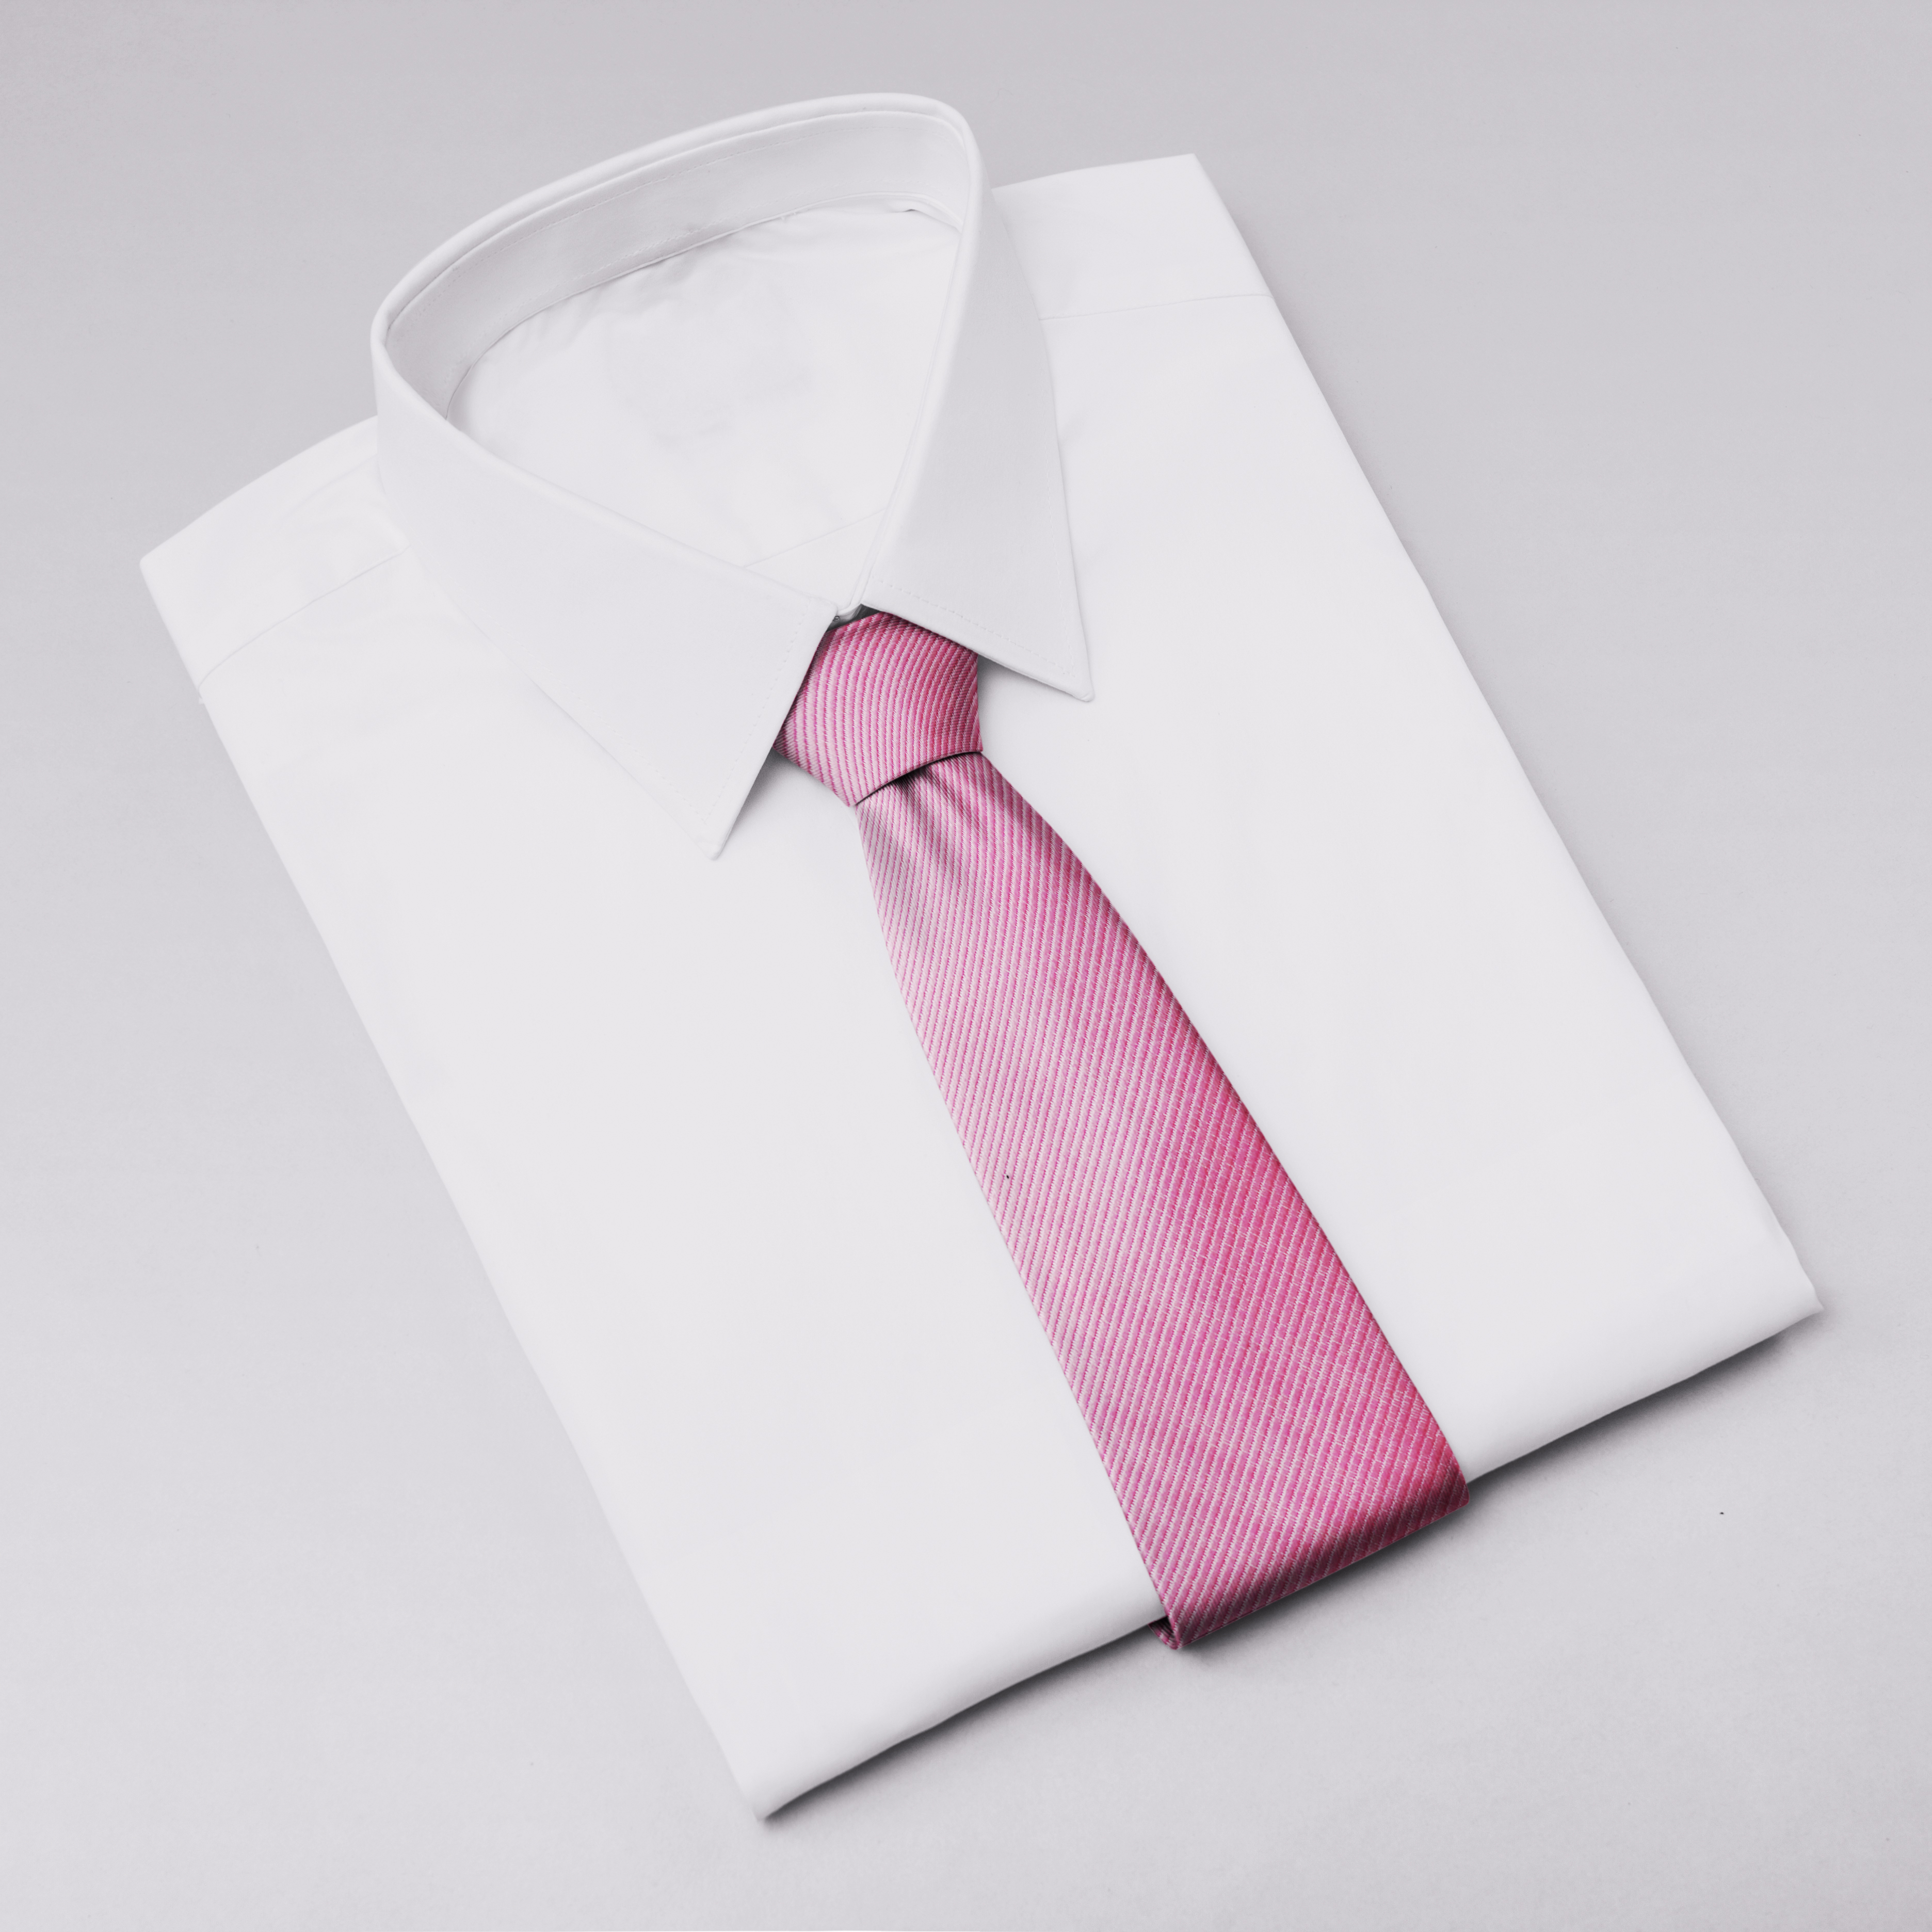 Cà vạt nam, cà vạt bản nhỏ, cà vạt 6cm-Cà vạt lẻ bản nhỏ 6cm màu hồng trơn